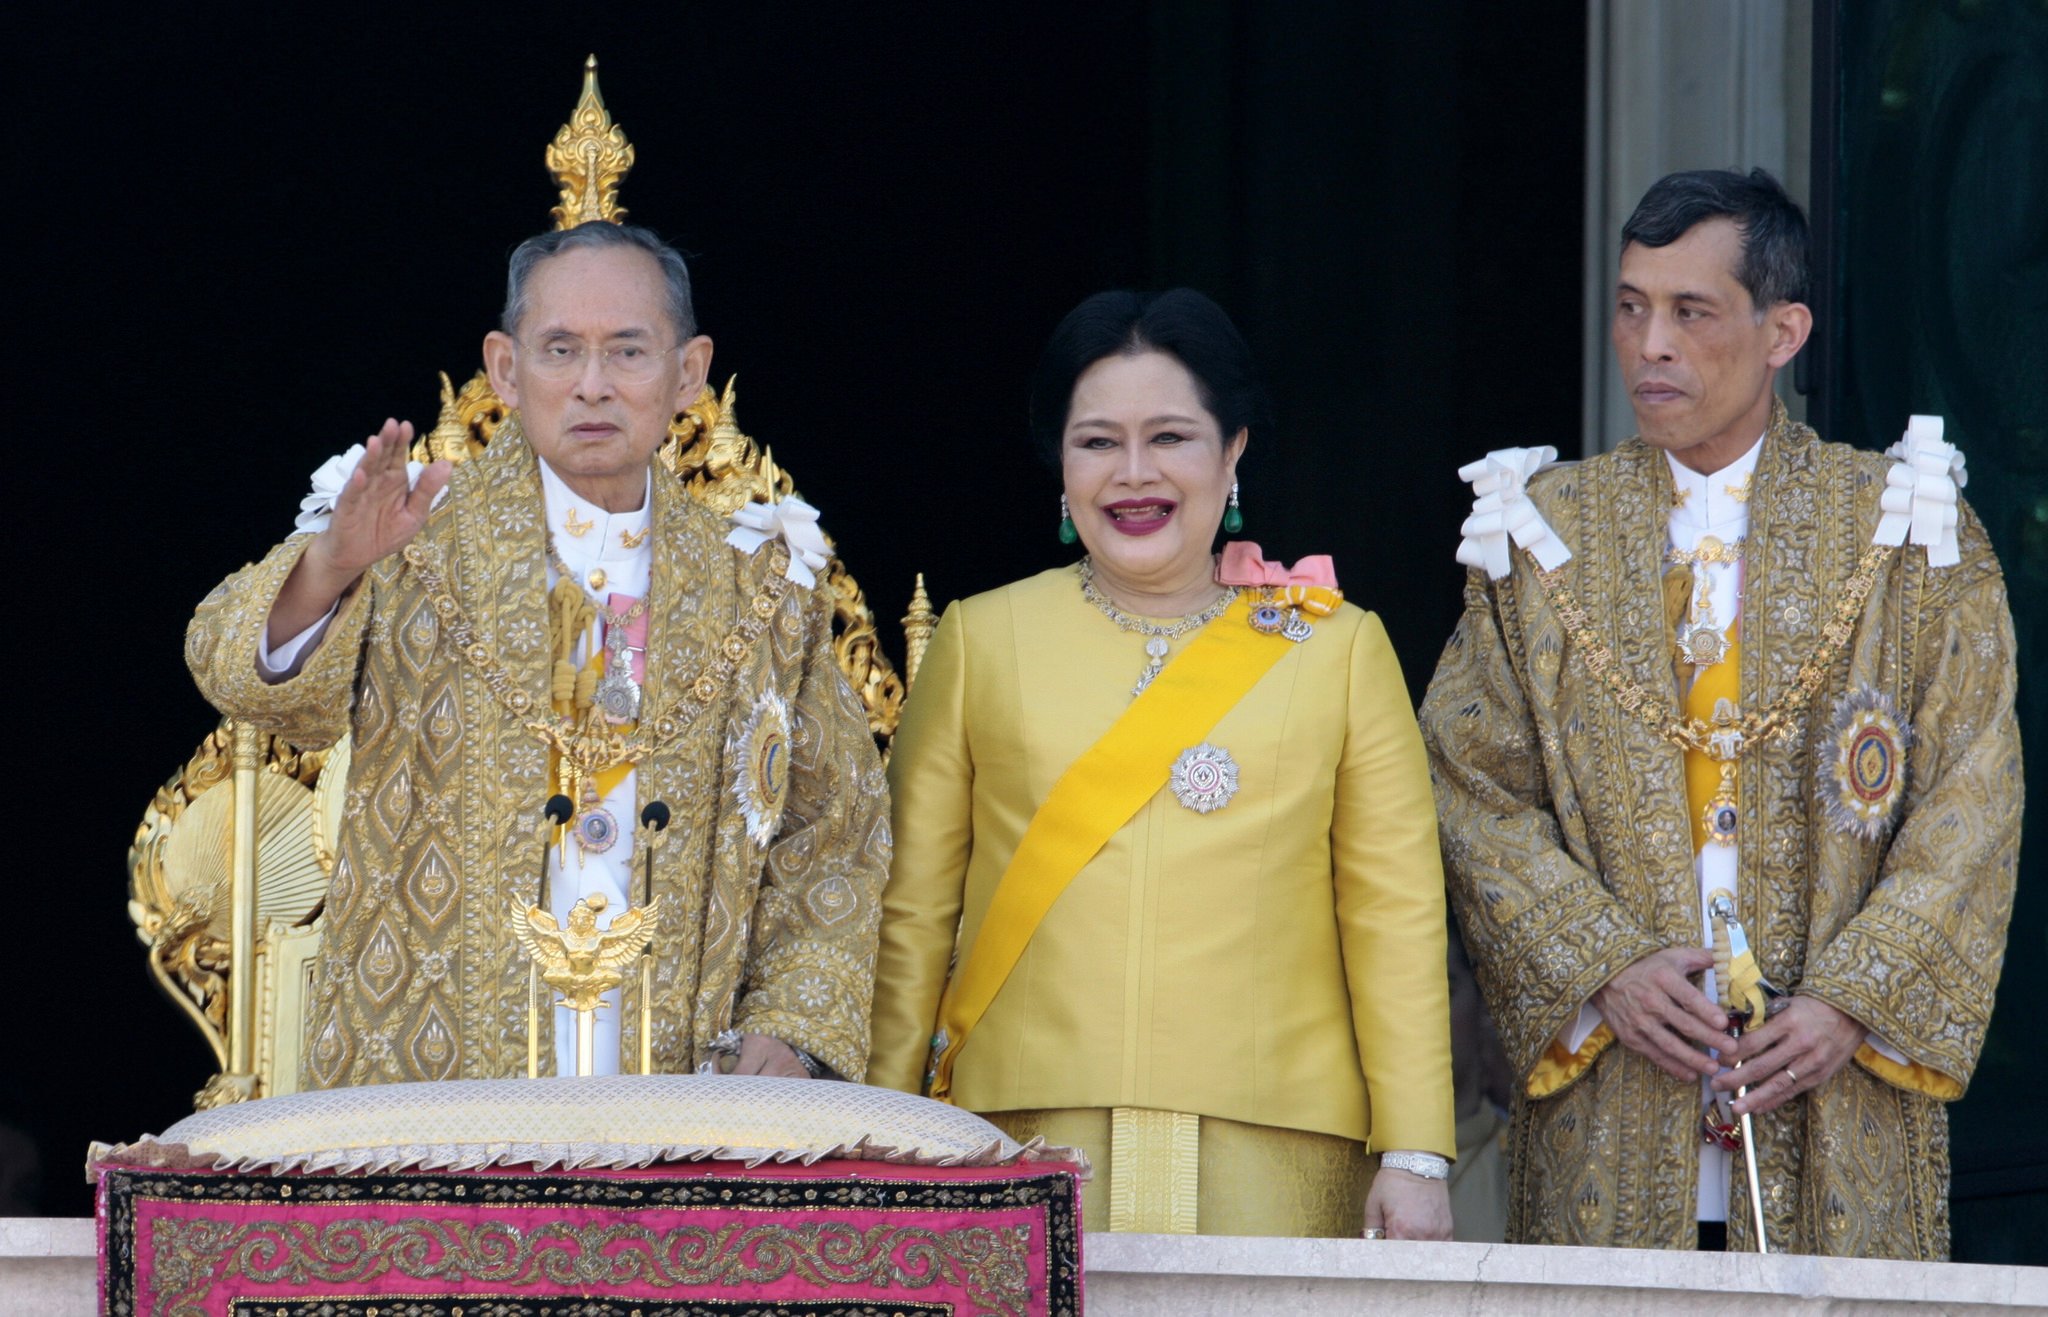 El rei tailandès vestit de dona (i la ‘seva’ amenaça) es fan virals